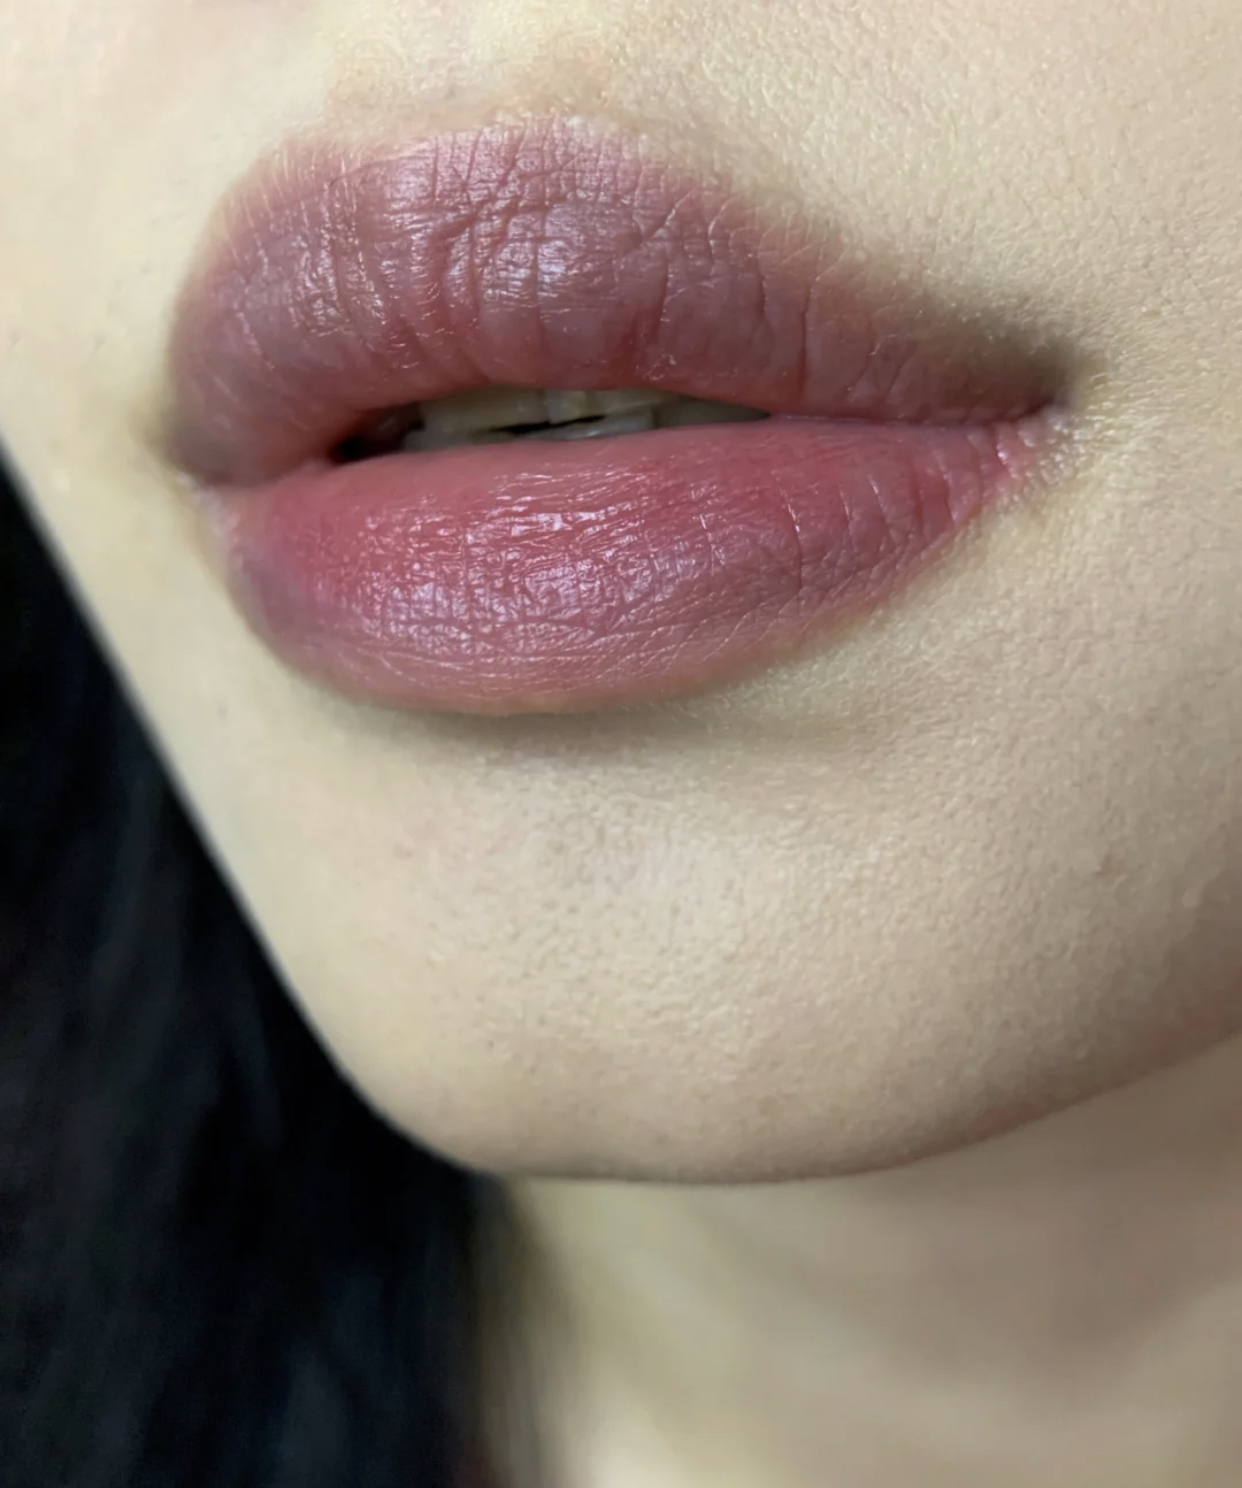 嘴唇经常起干皮,还越来越紫?可能是这几个原因,很影响颜值